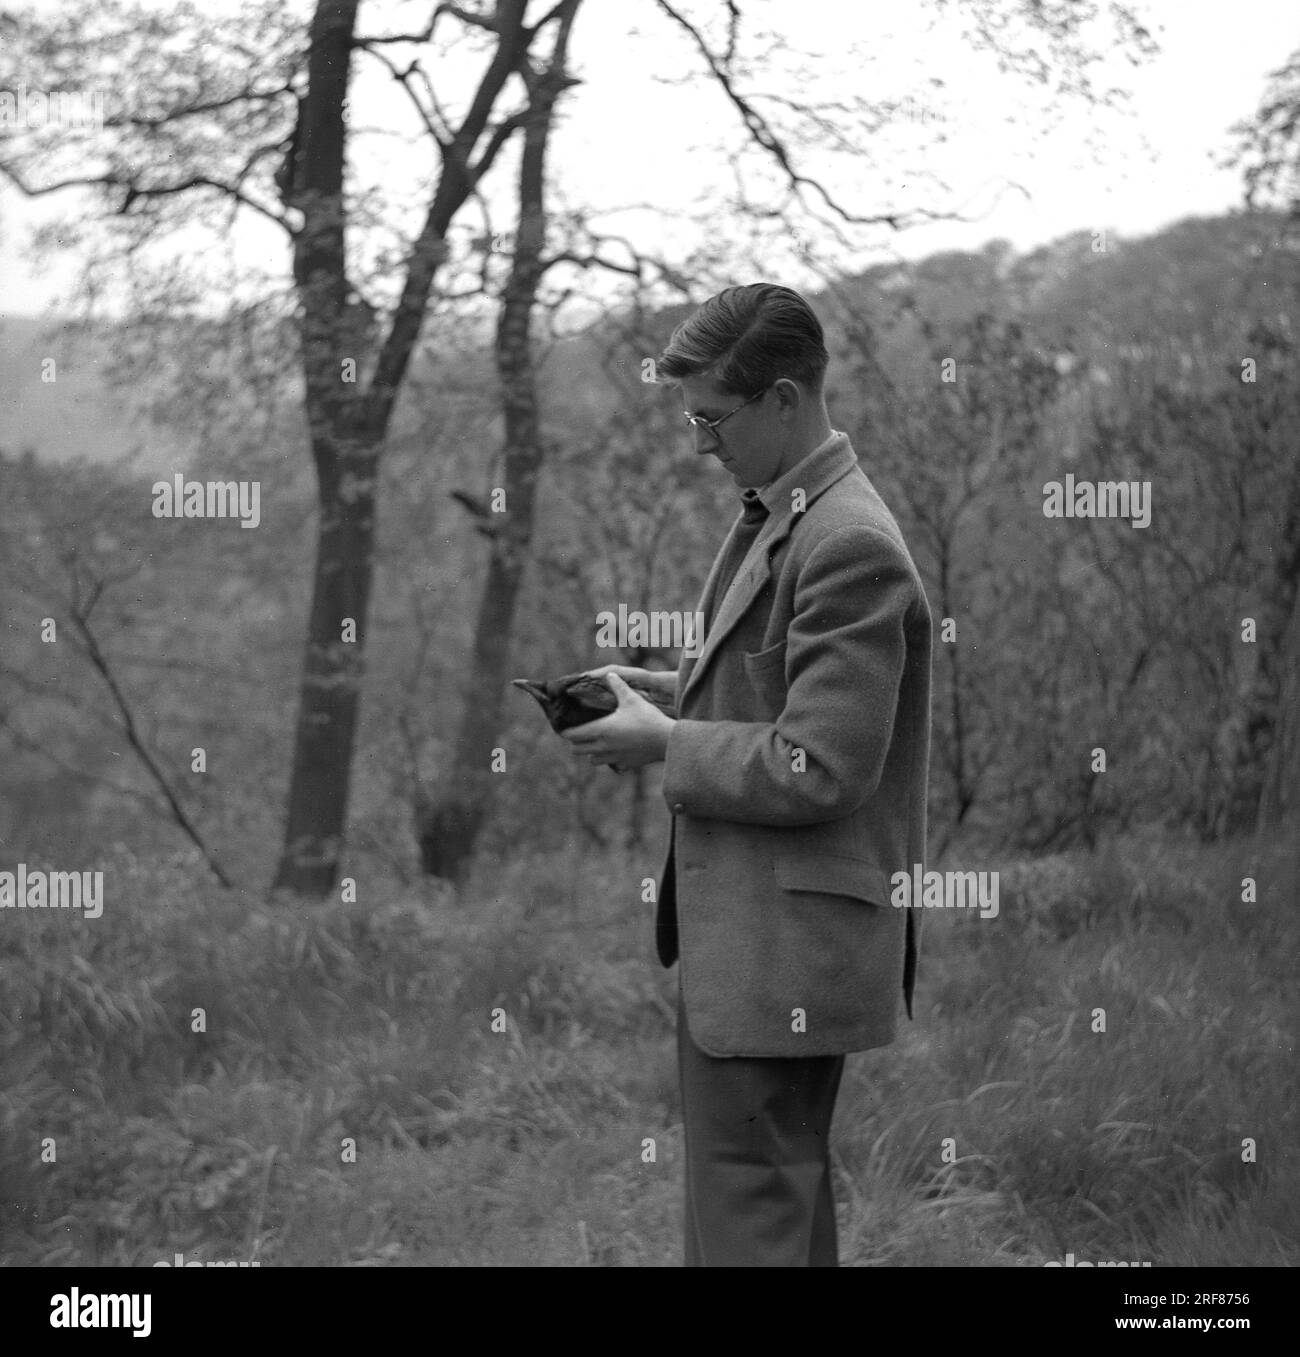 1950er Jahre, historisch, ein Mann in einer Sportjacke in einem bewaldeten Hügel stehend mit einer Amsel, möglicherweise verletzt, England, Großbritannien. Stockfoto